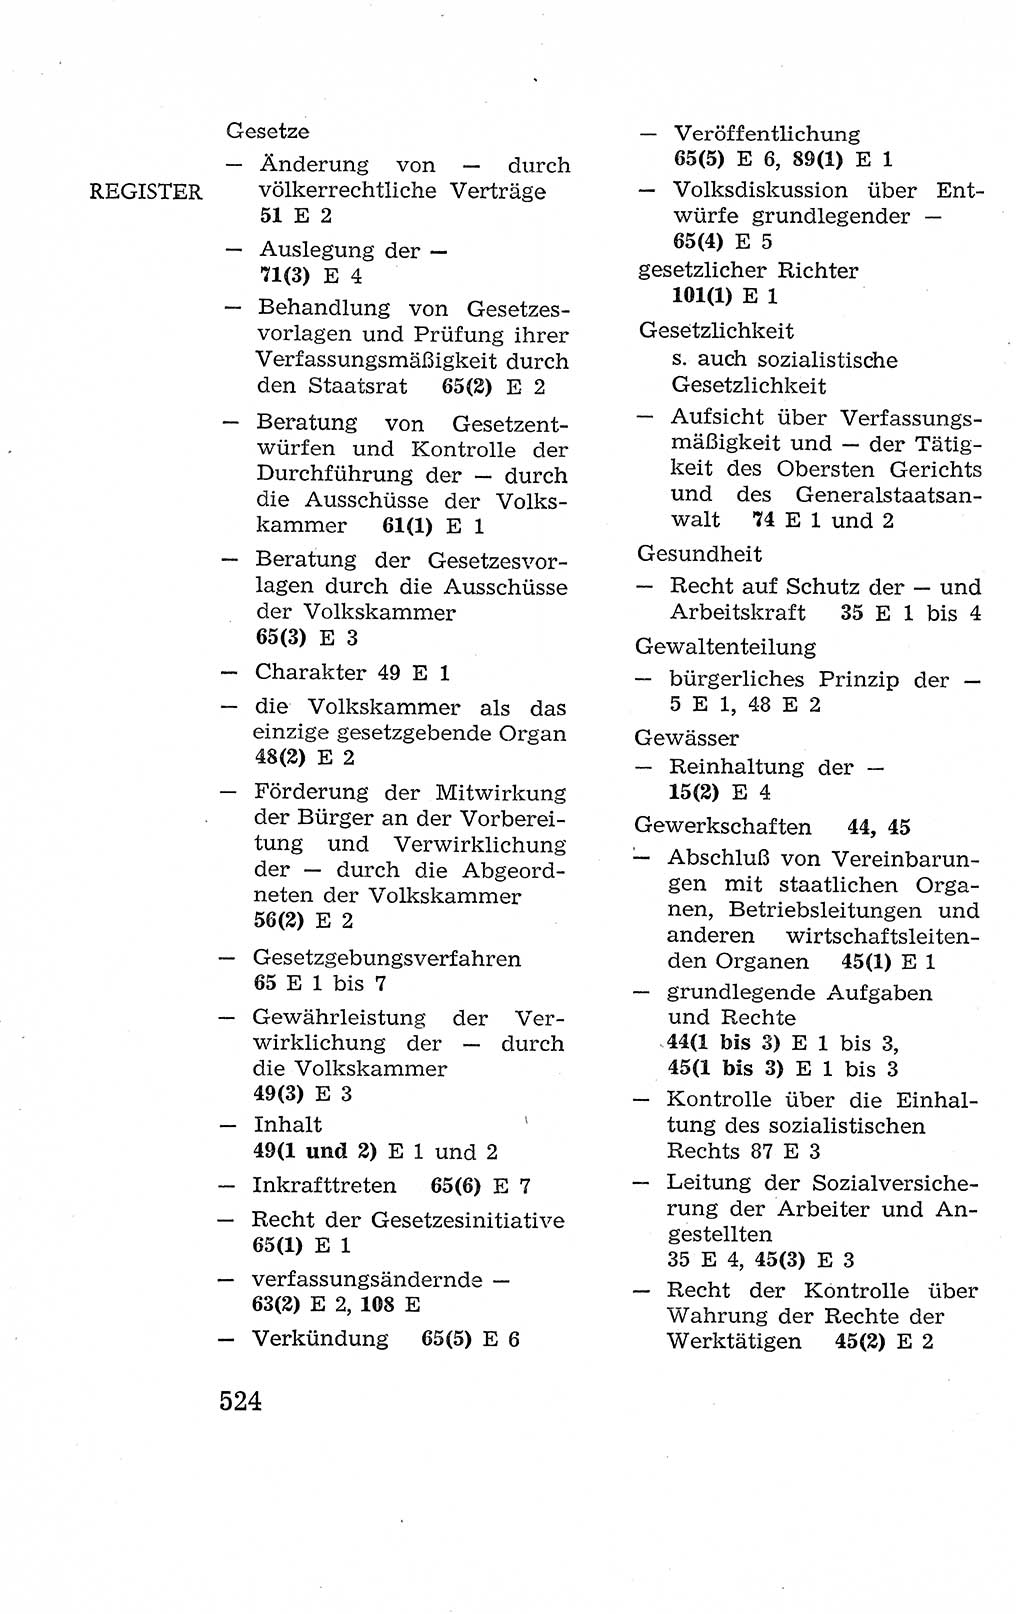 Verfassung der Deutschen Demokratischen Republik (DDR), Dokumente, Kommentar 1969, Band 2, Seite 524 (Verf. DDR Dok. Komm. 1969, Bd. 2, S. 524)